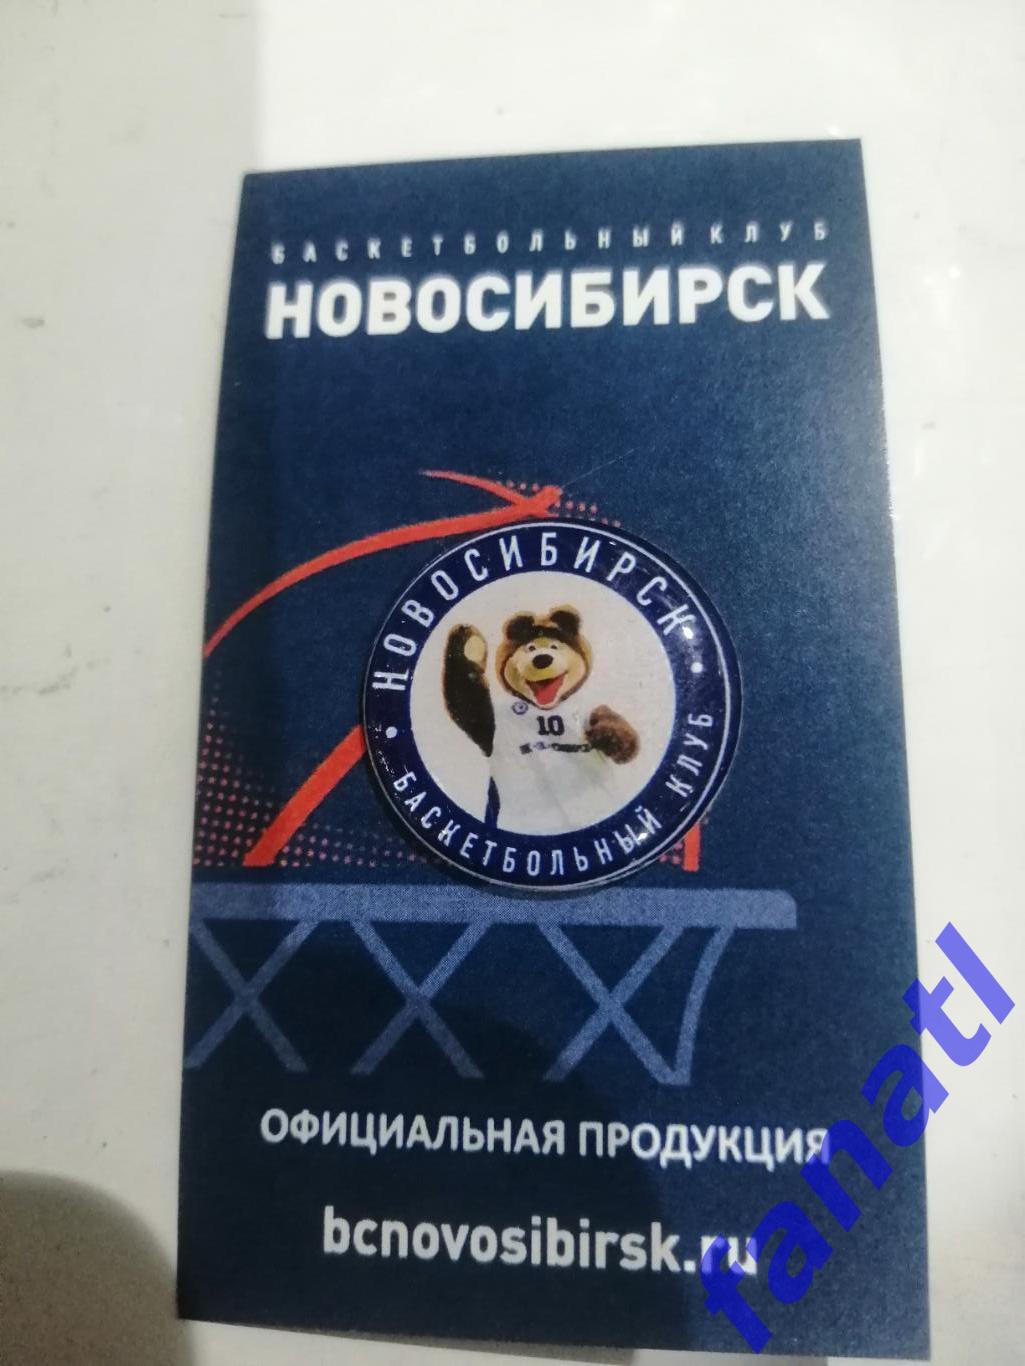 Баскетбольный клуб Новосибирск. Официальная продукция.